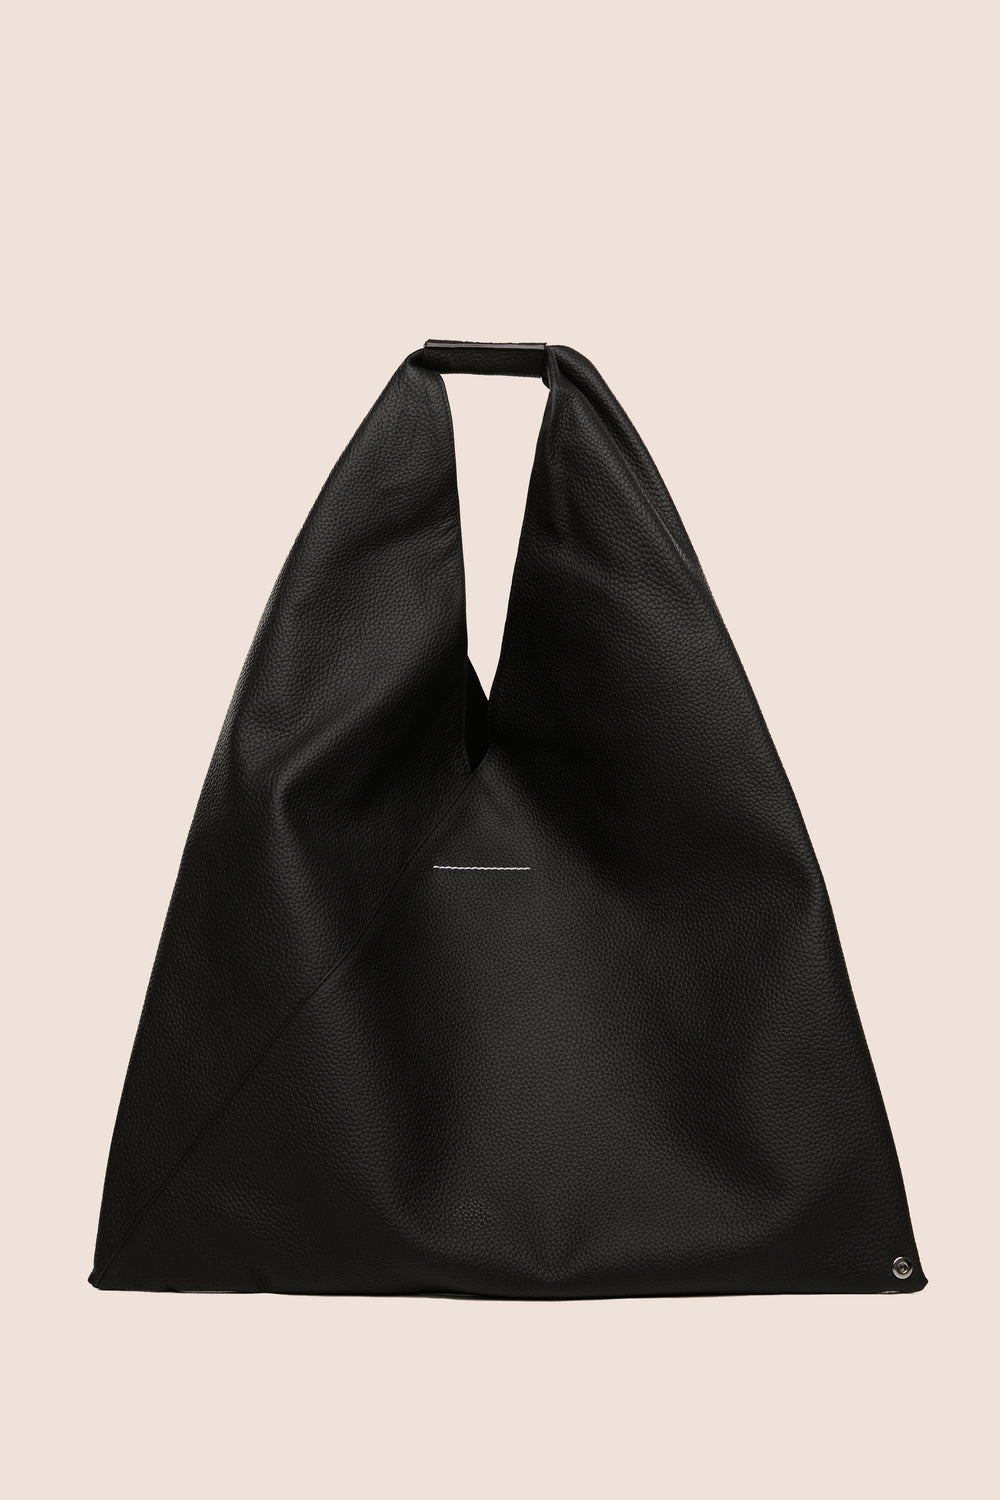 Japanese grainy leather bag-Black MM6 MAISON MARGIELA